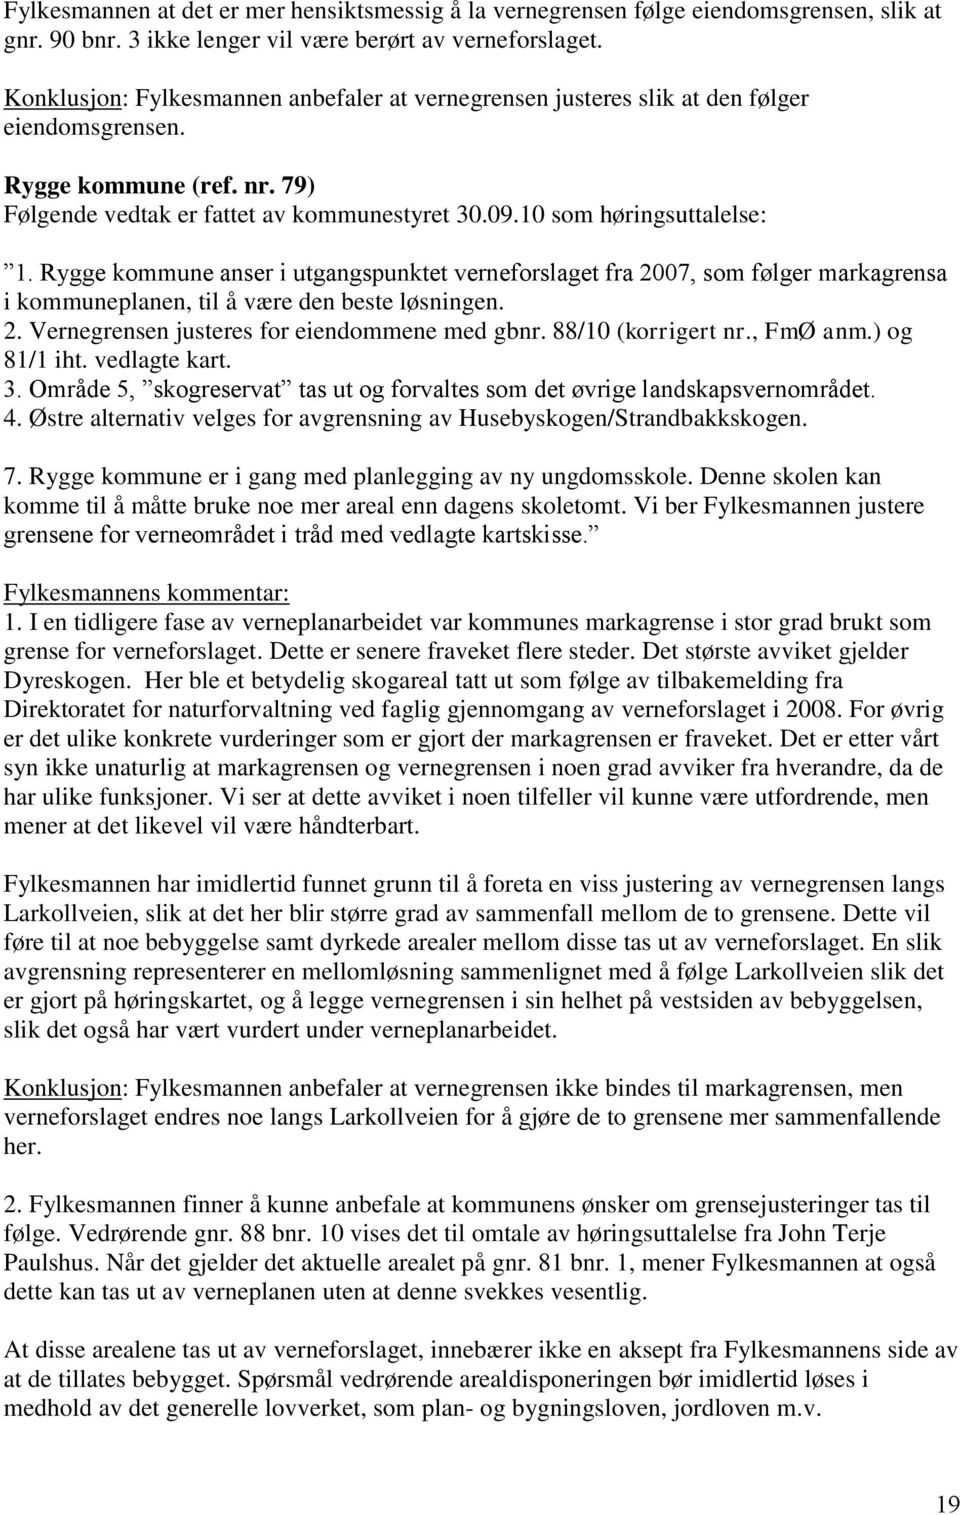 Rygge kommune anser i utgangspunktet verneforslaget fra 2007, som følger markagrensa i kommuneplanen, til å være den beste løsningen. 2. Vernegrensen justeres for eiendommene med gbnr.